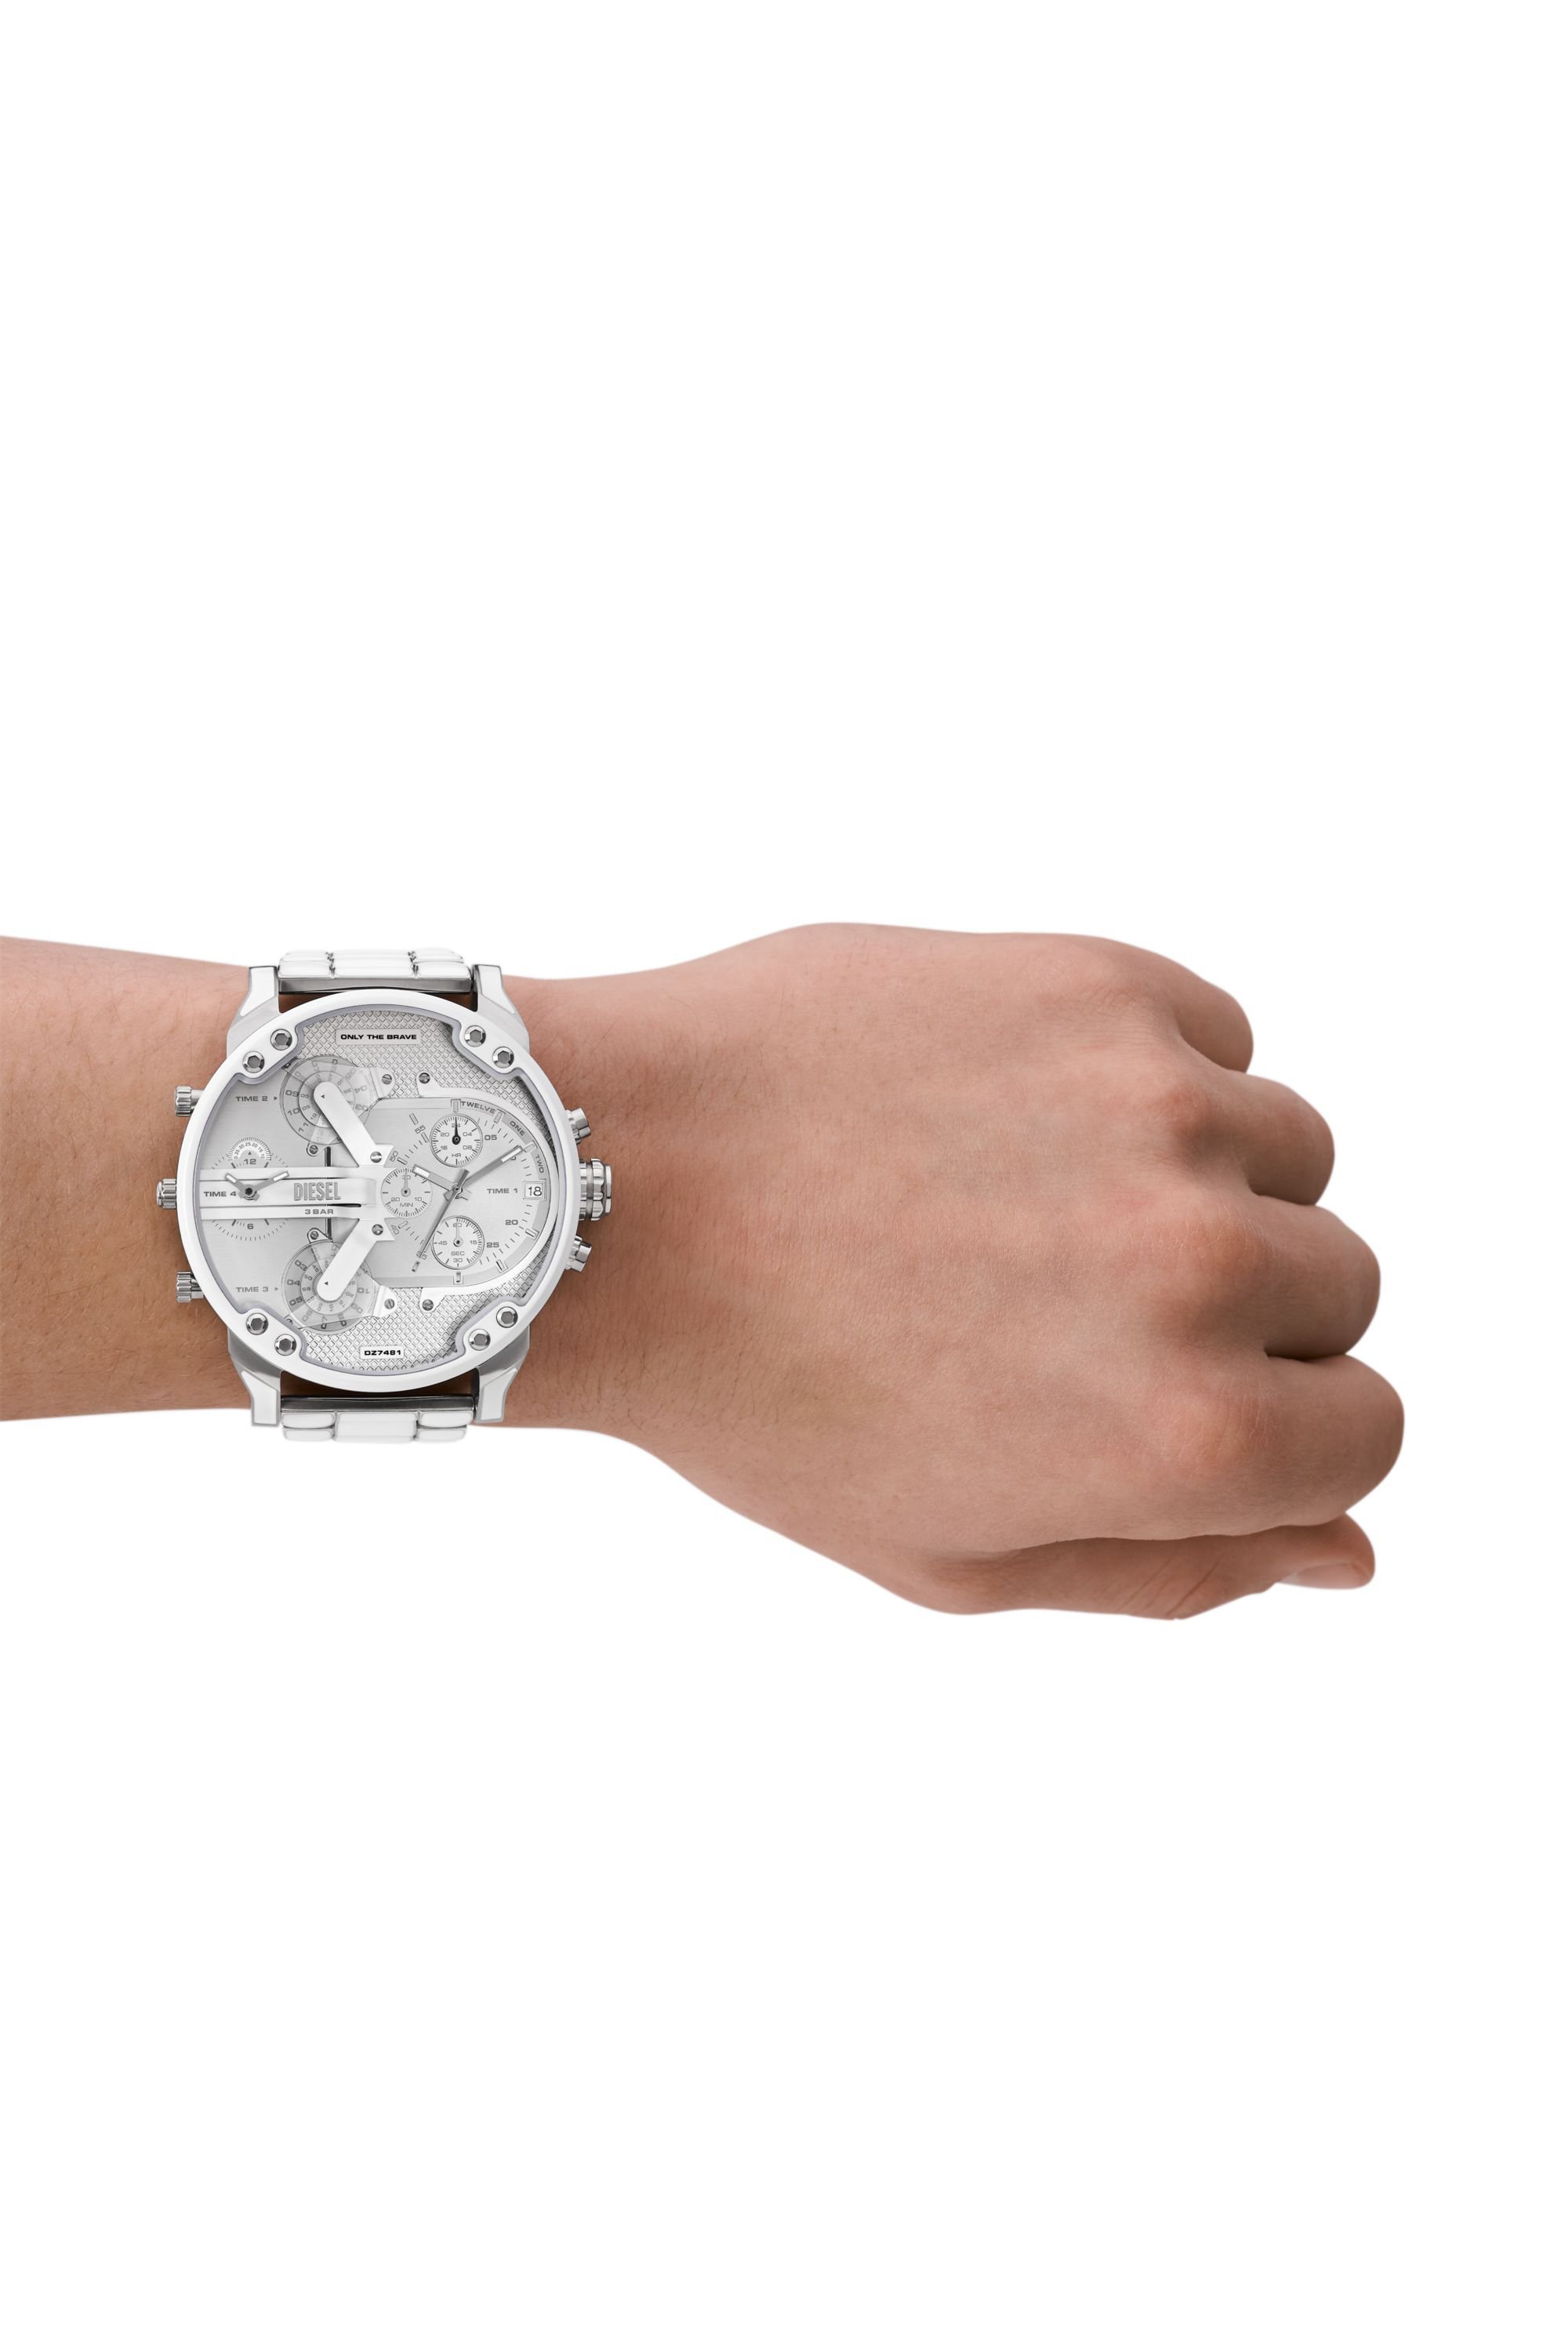 Diesel - DZ7481, Herren Mr. Daddy 2.0 Armbanduhr aus Edelstahl mit weißen Akzenten in Silber - Image 4